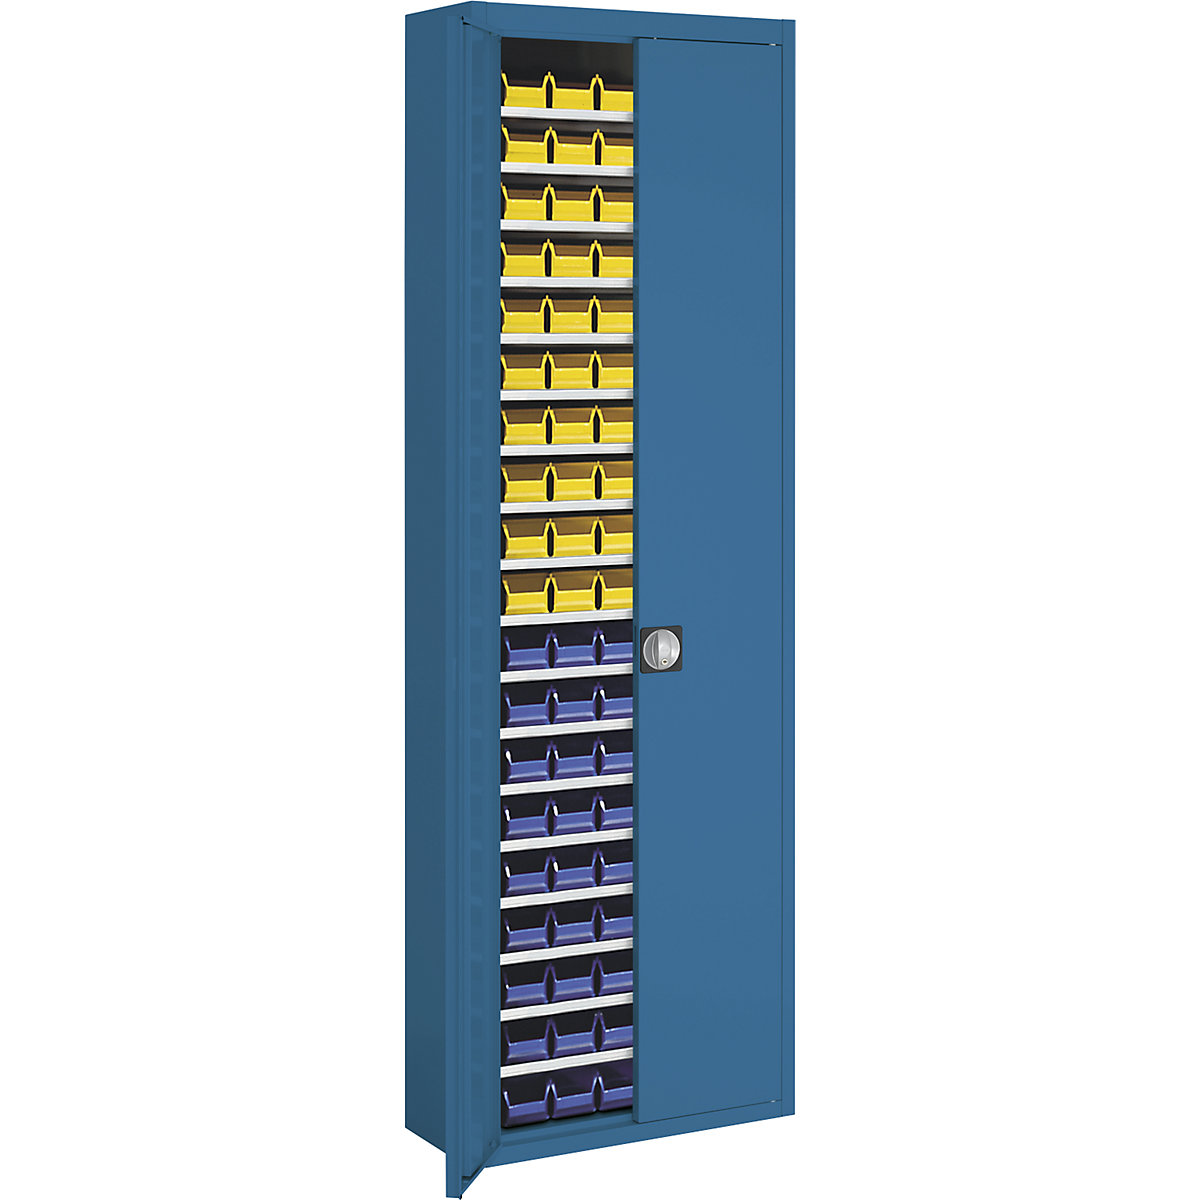 Skladová skriňa s prepravkami s viditeľným obsahom – mauser, v x š x h 2150 x 680 x 280 mm, dvojfarebná, korpus šedý, dvere modré, 114 prepraviek-12